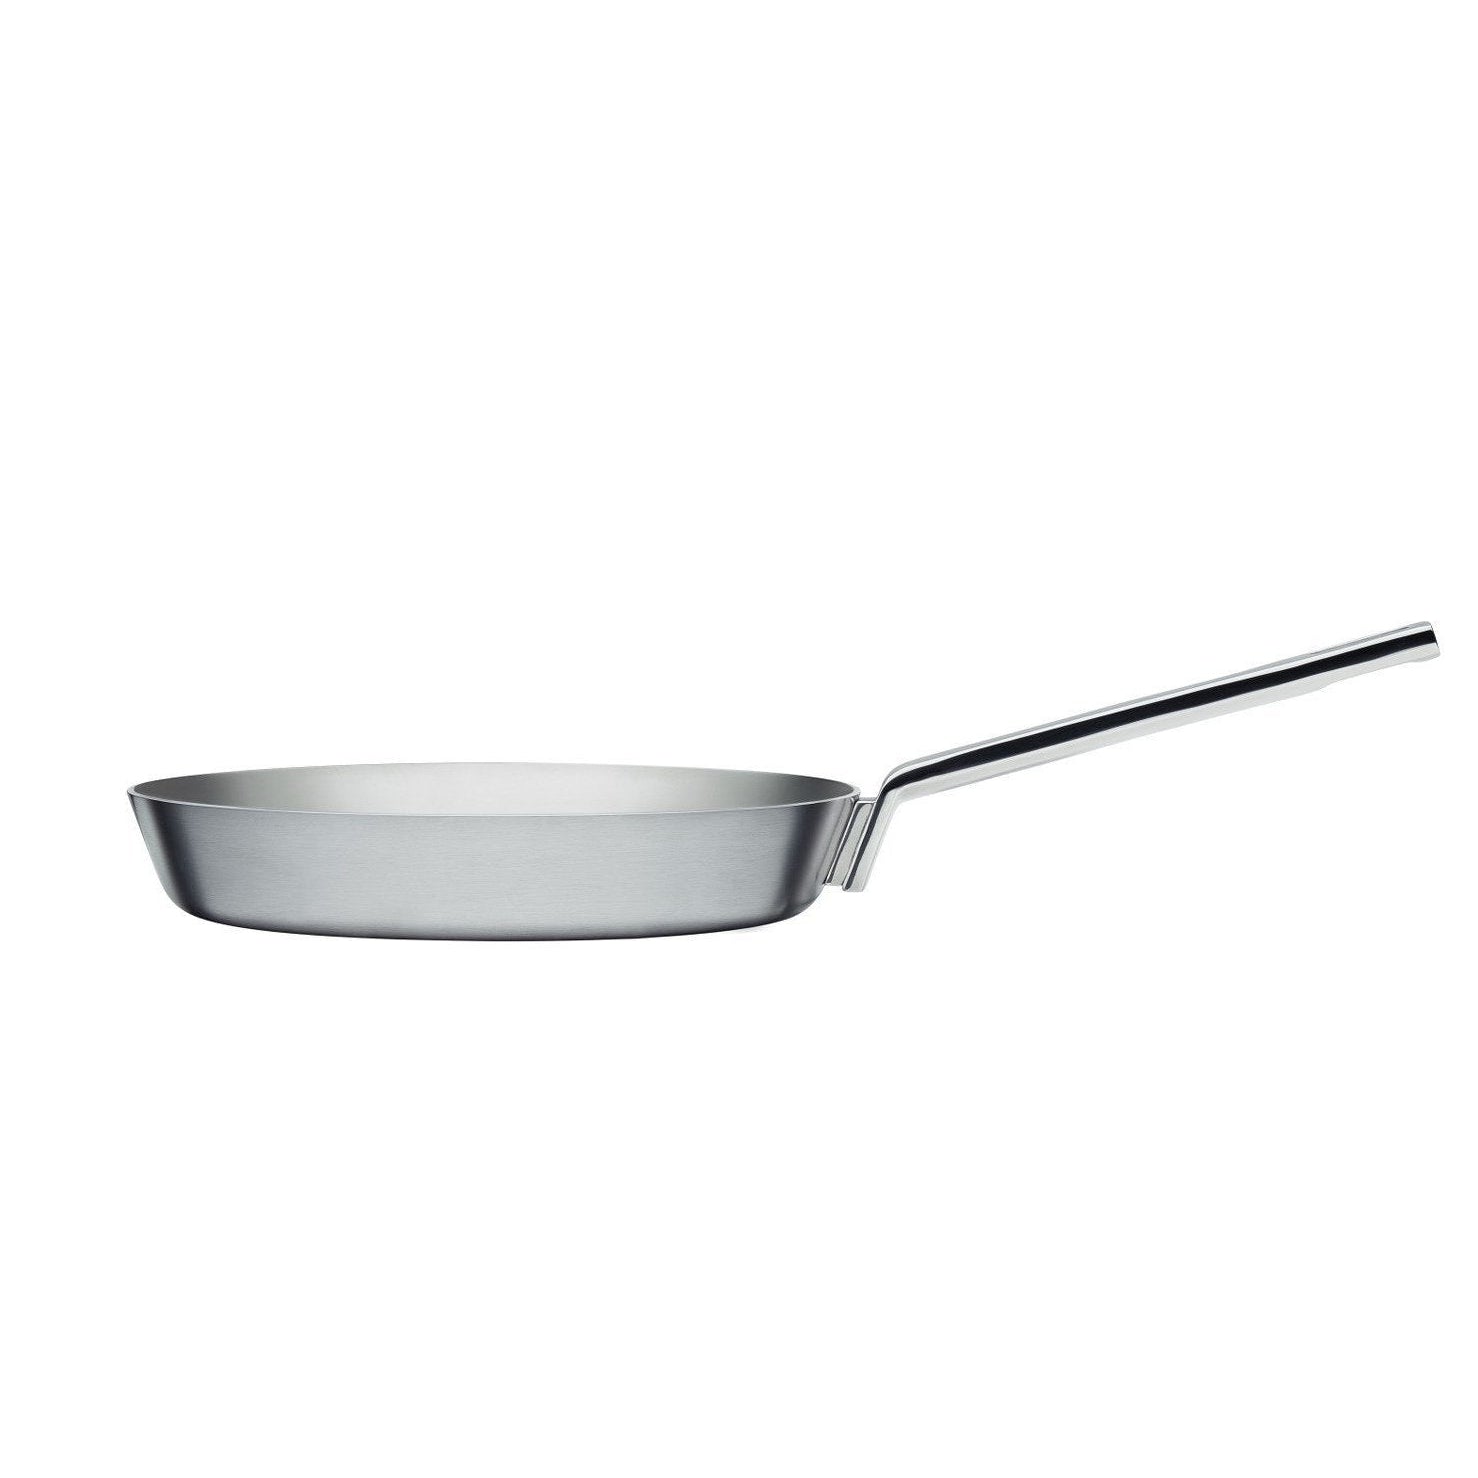 Iittala Tools Frying Pan, 28cm